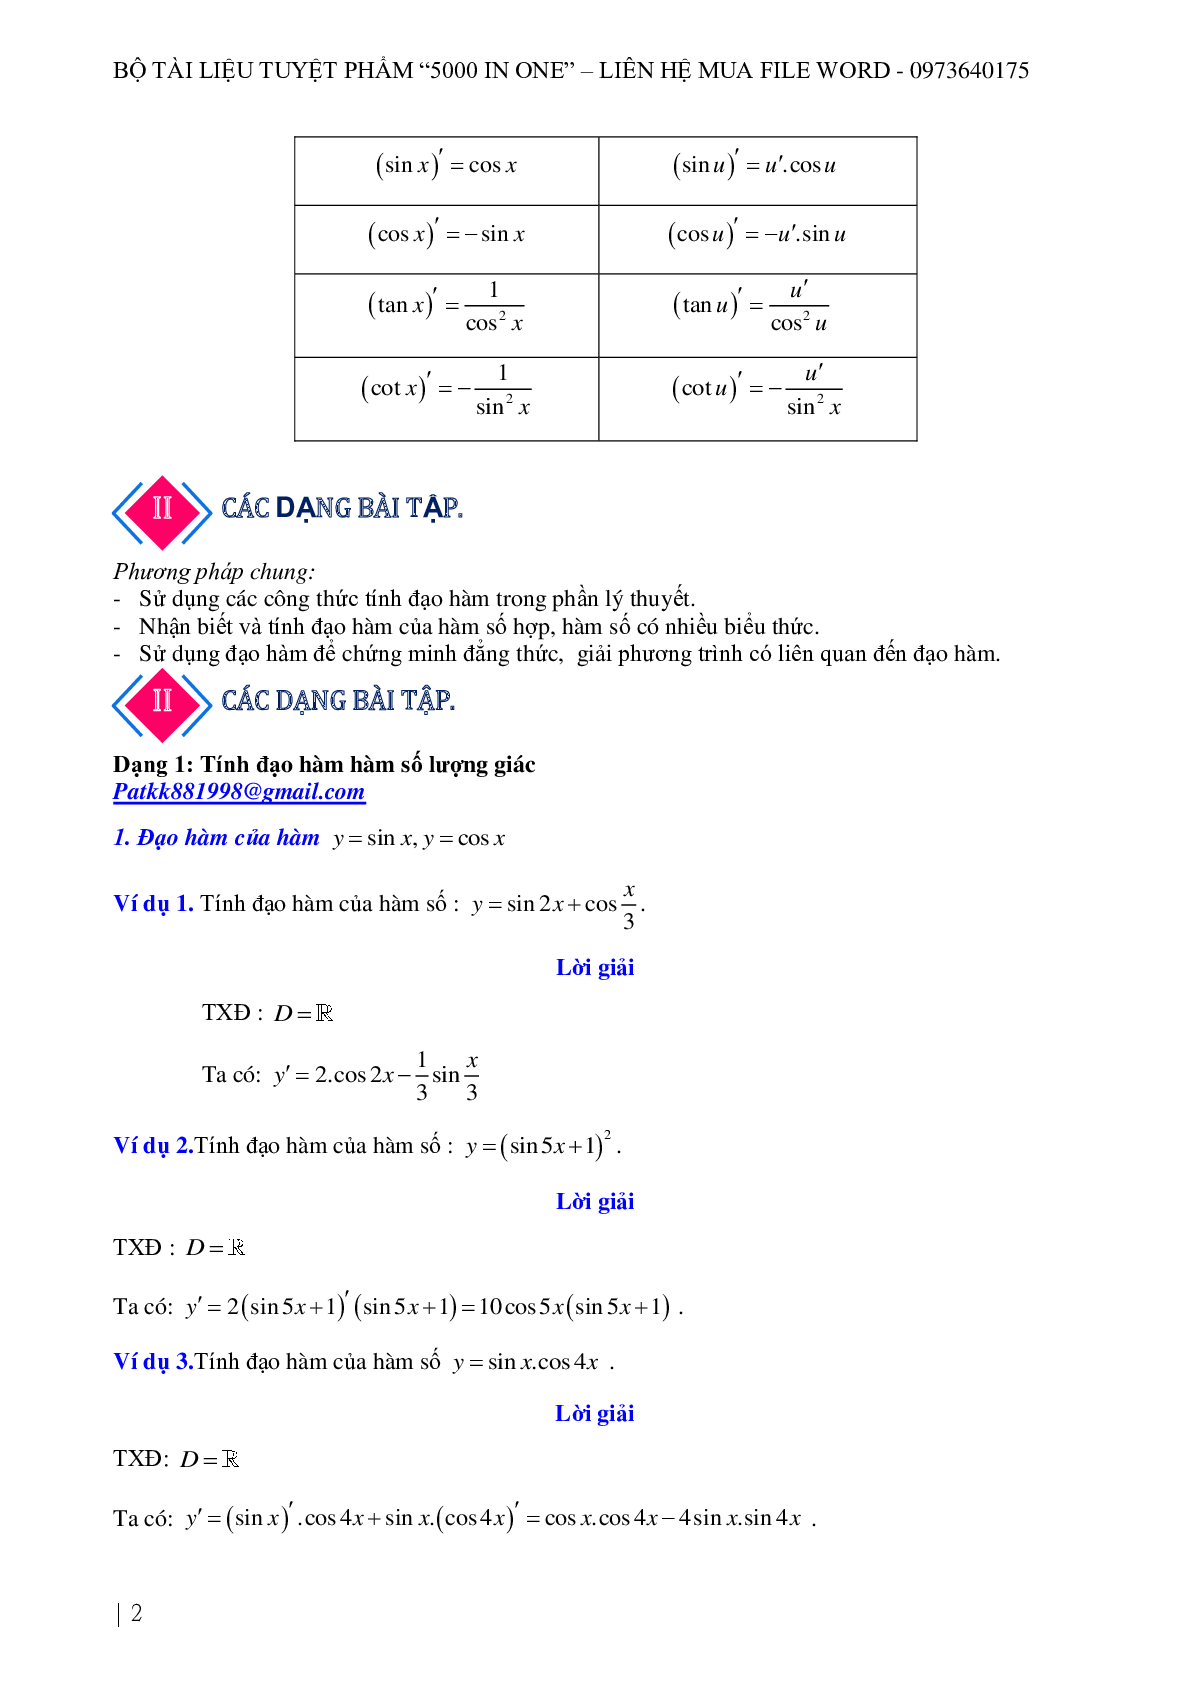 Chuyên đề Đạo hàm của hàm số lượng giác 2023 hay, chọn lọc (trang 2)